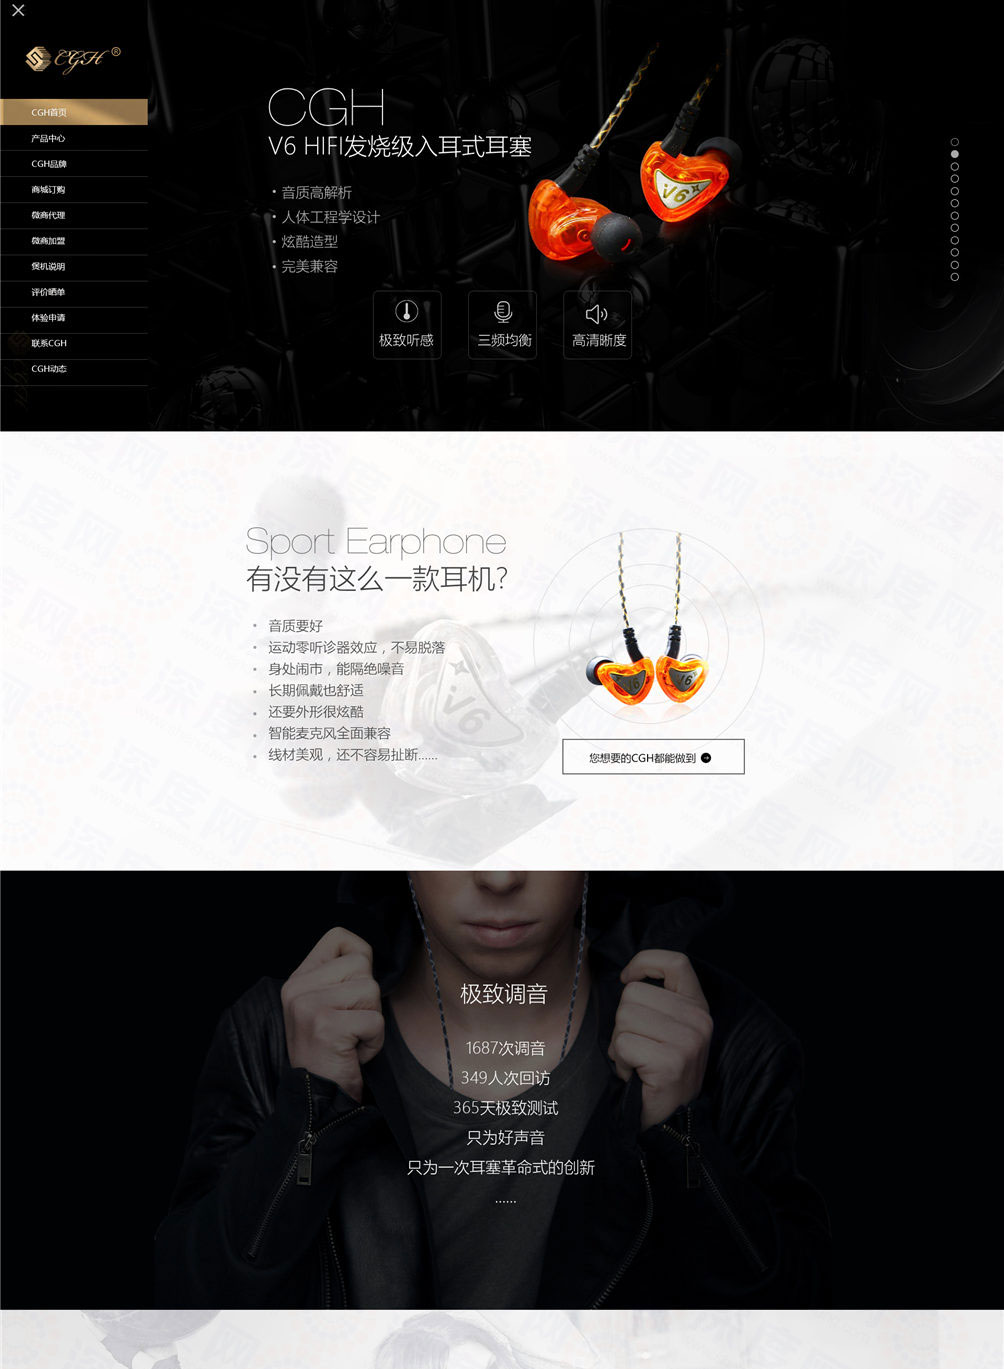 东莞市创高行耳机营销型网站建设案例